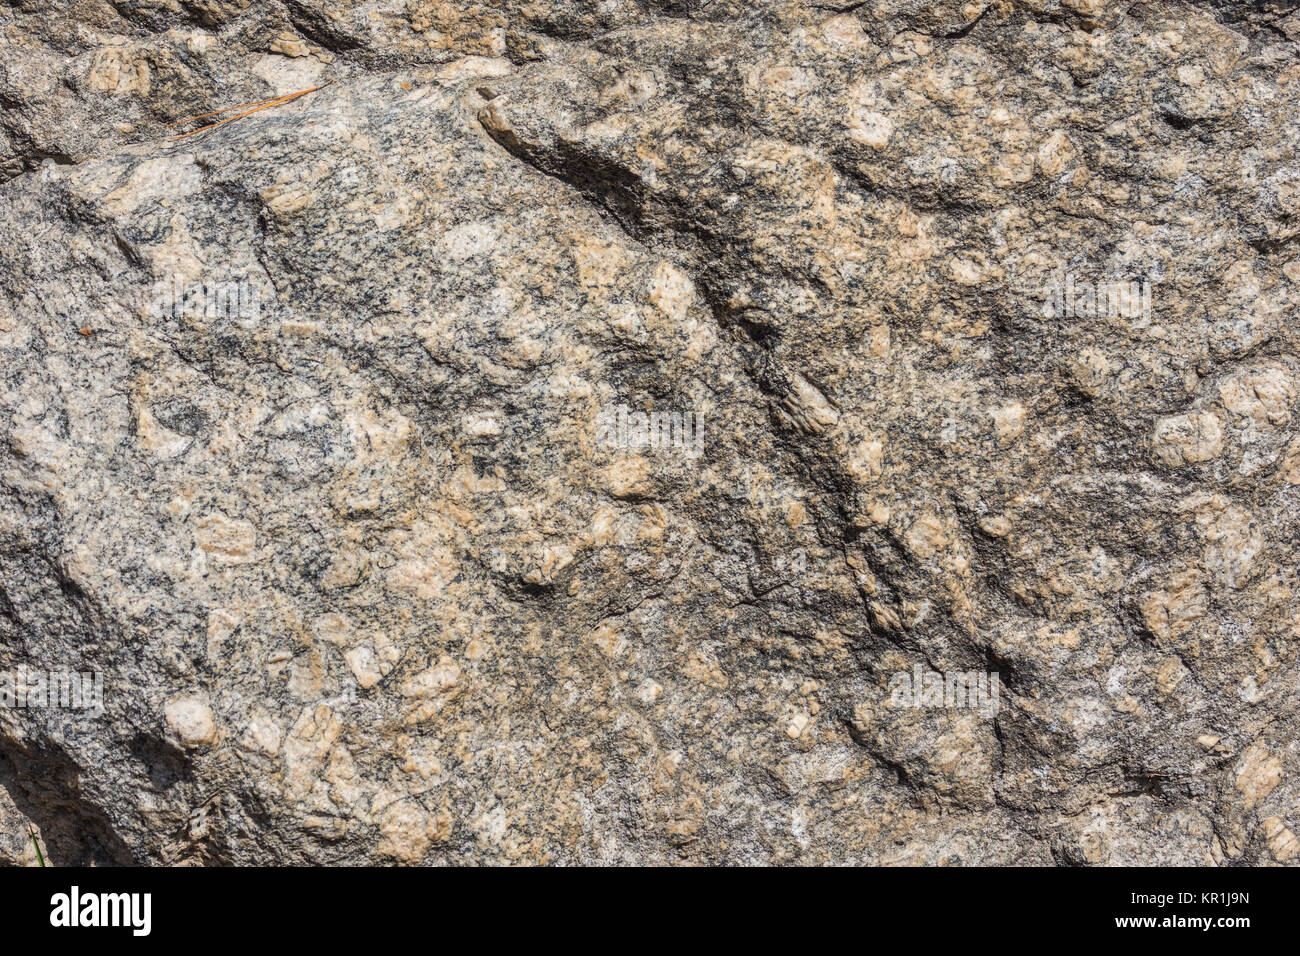 Gros cristaux de feldspath de gneiss granitique précambrienne en affleurement. Madagascar, l'Afrique. Banque D'Images